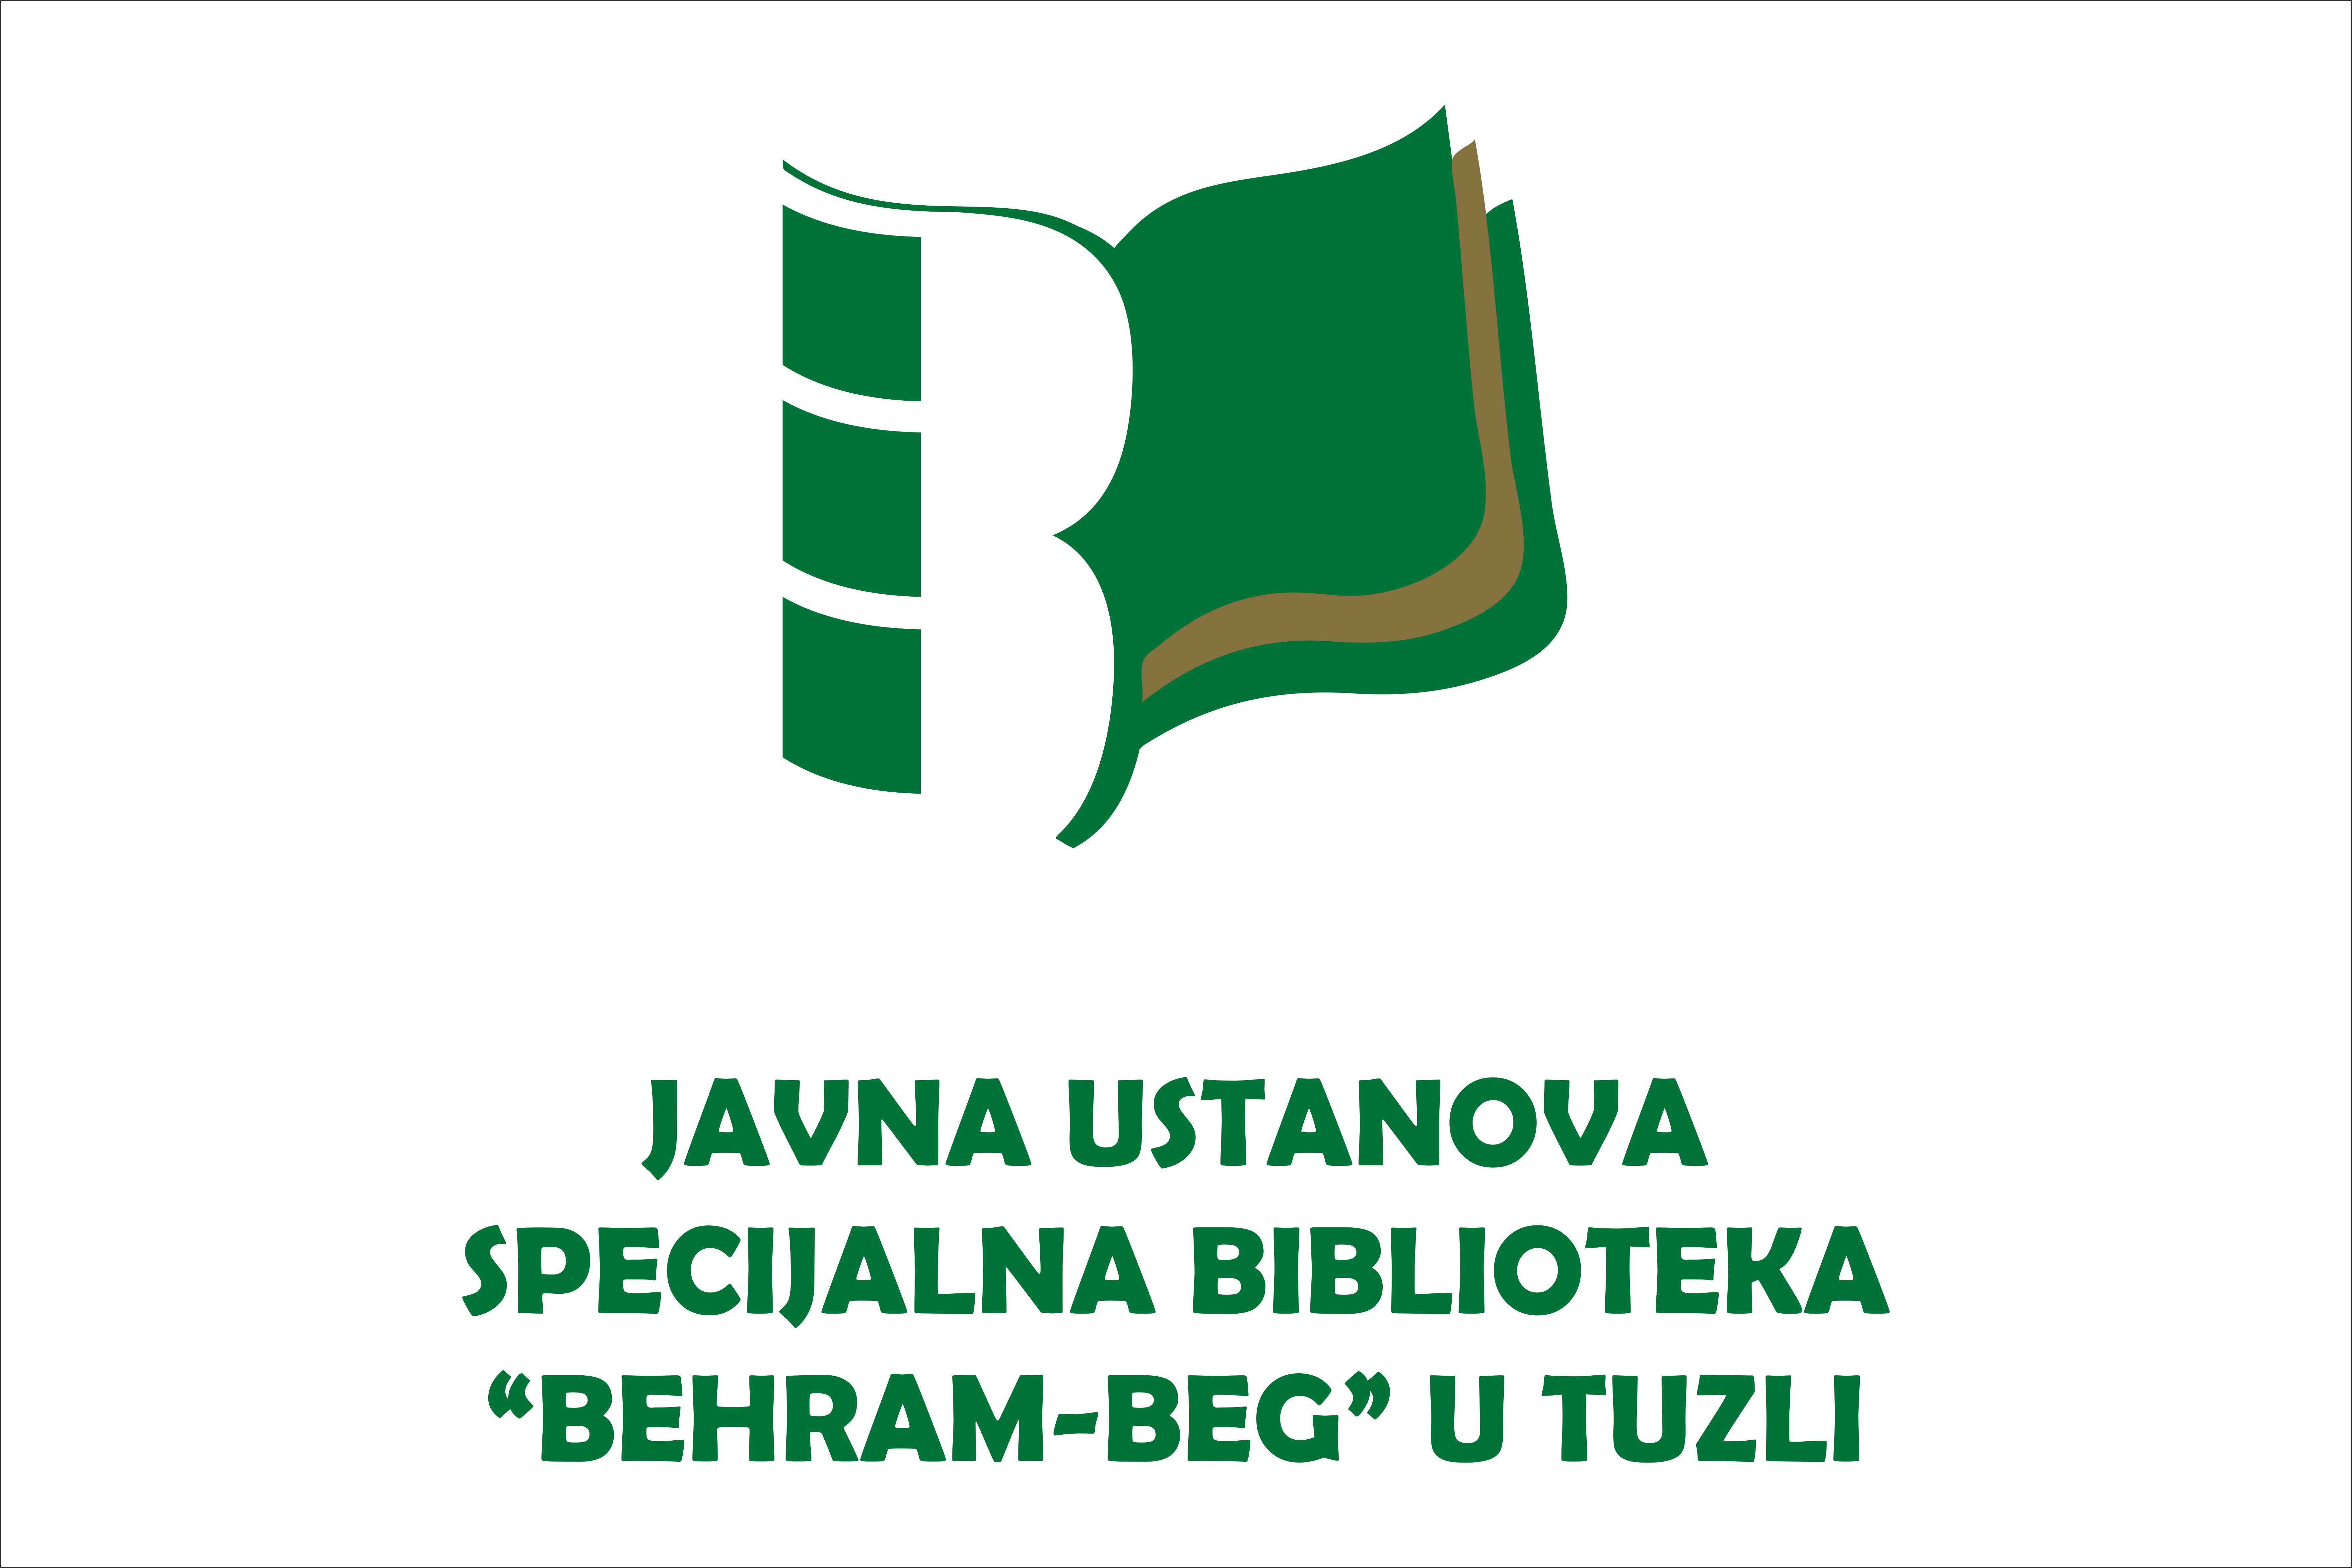 JU Specijalna biblioteka Behram-beg